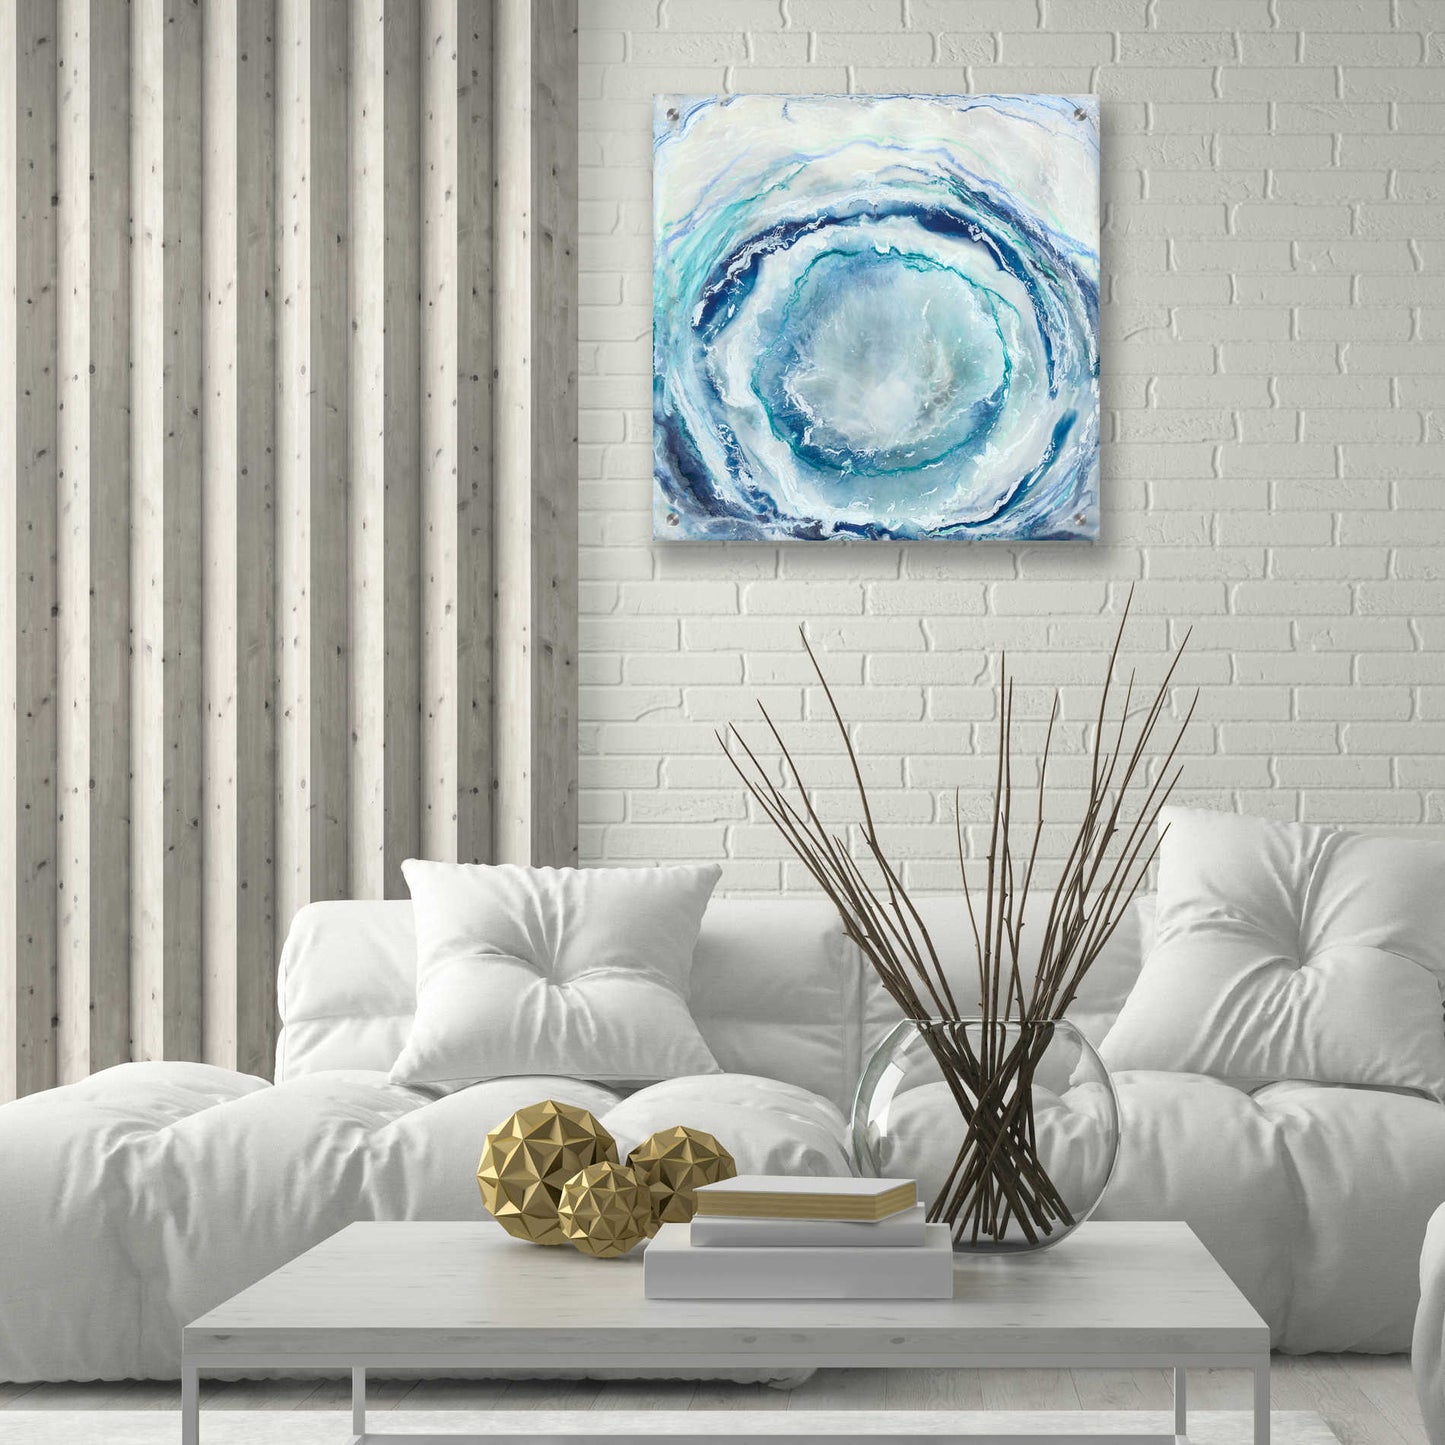 Epic Art 'Ocean Eye I' by Renee W Stramel, Acrylic Glass Wall Art,24x24